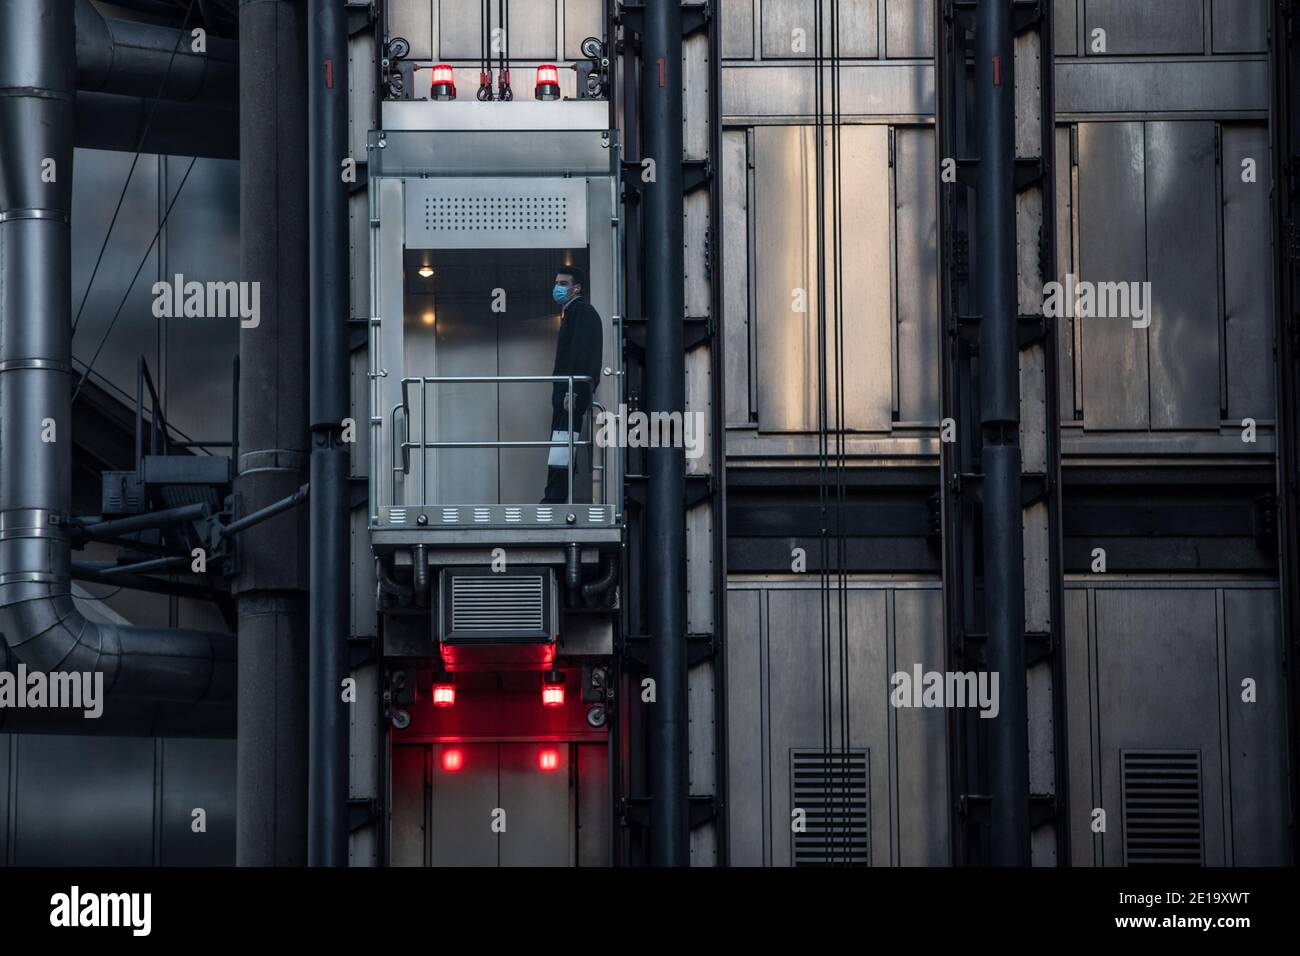 Ein Arbeiter nimmt den Aufzug in Lloyds of London, in der City of London während der Coronavirus Tier 2 Lockdown, Financial District, London, England, Großbritannien Stockfoto